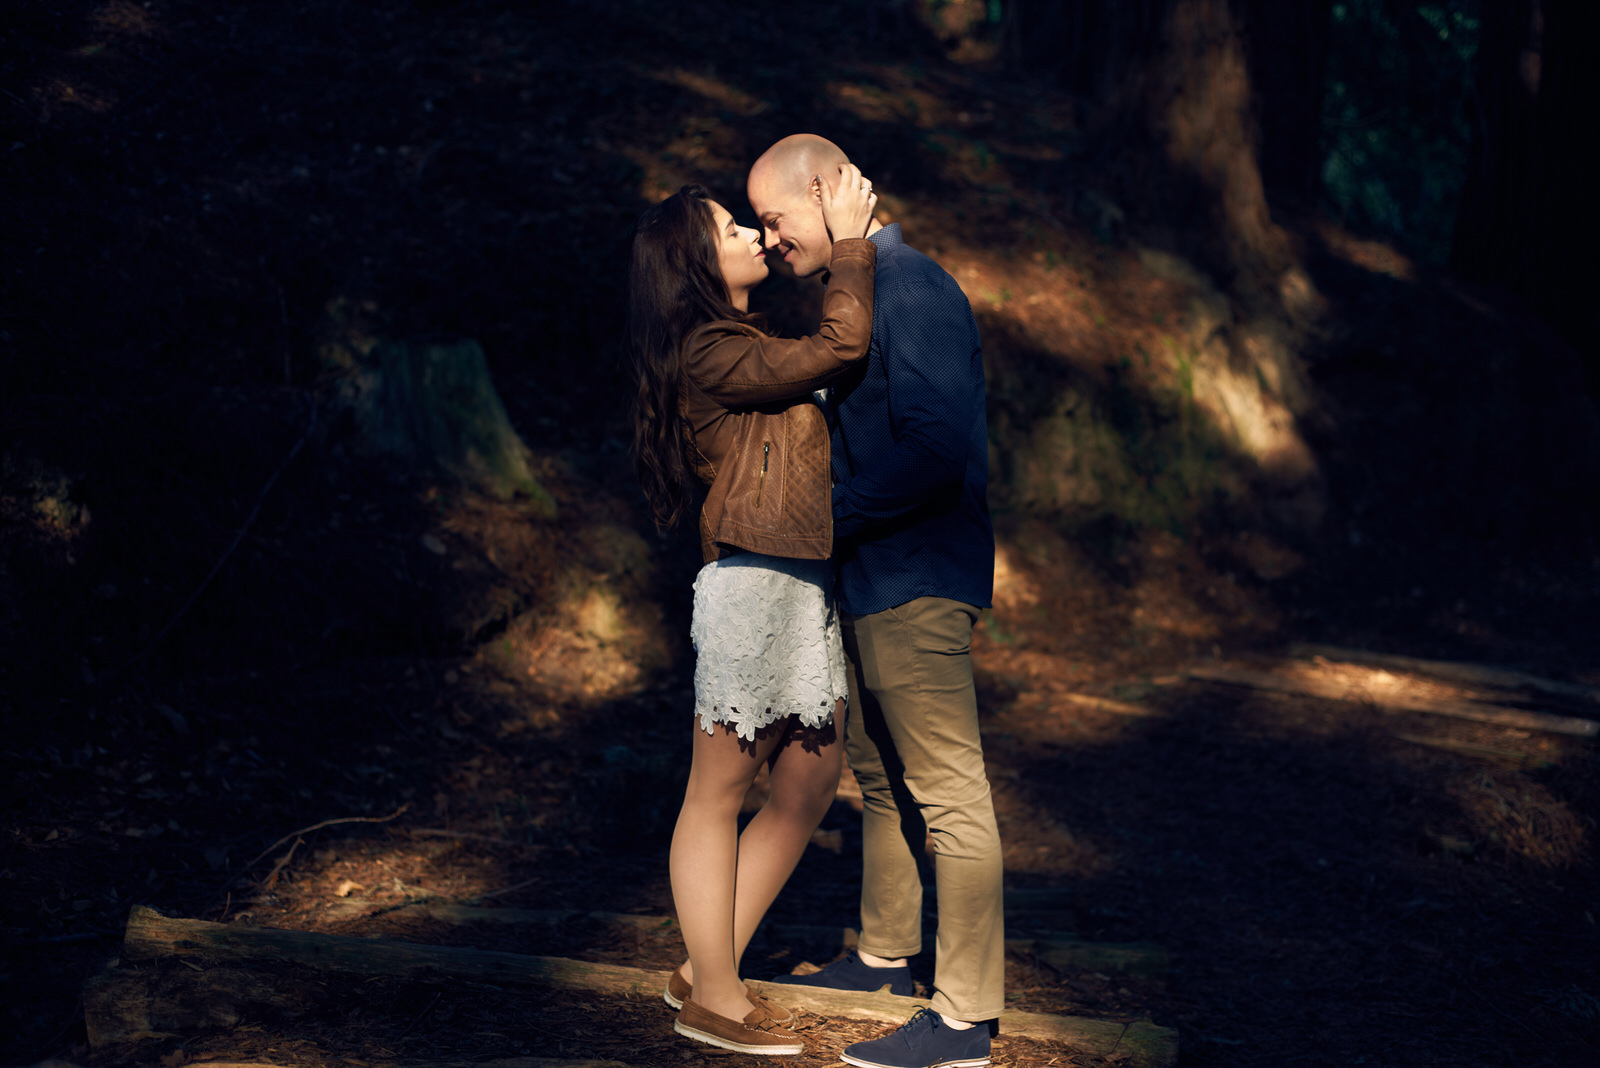 sesion de enamorados, fotos de pareja, preboda en el bosque de sequoyas de cabezon, paseo entre arboles gigantes bosque, love session